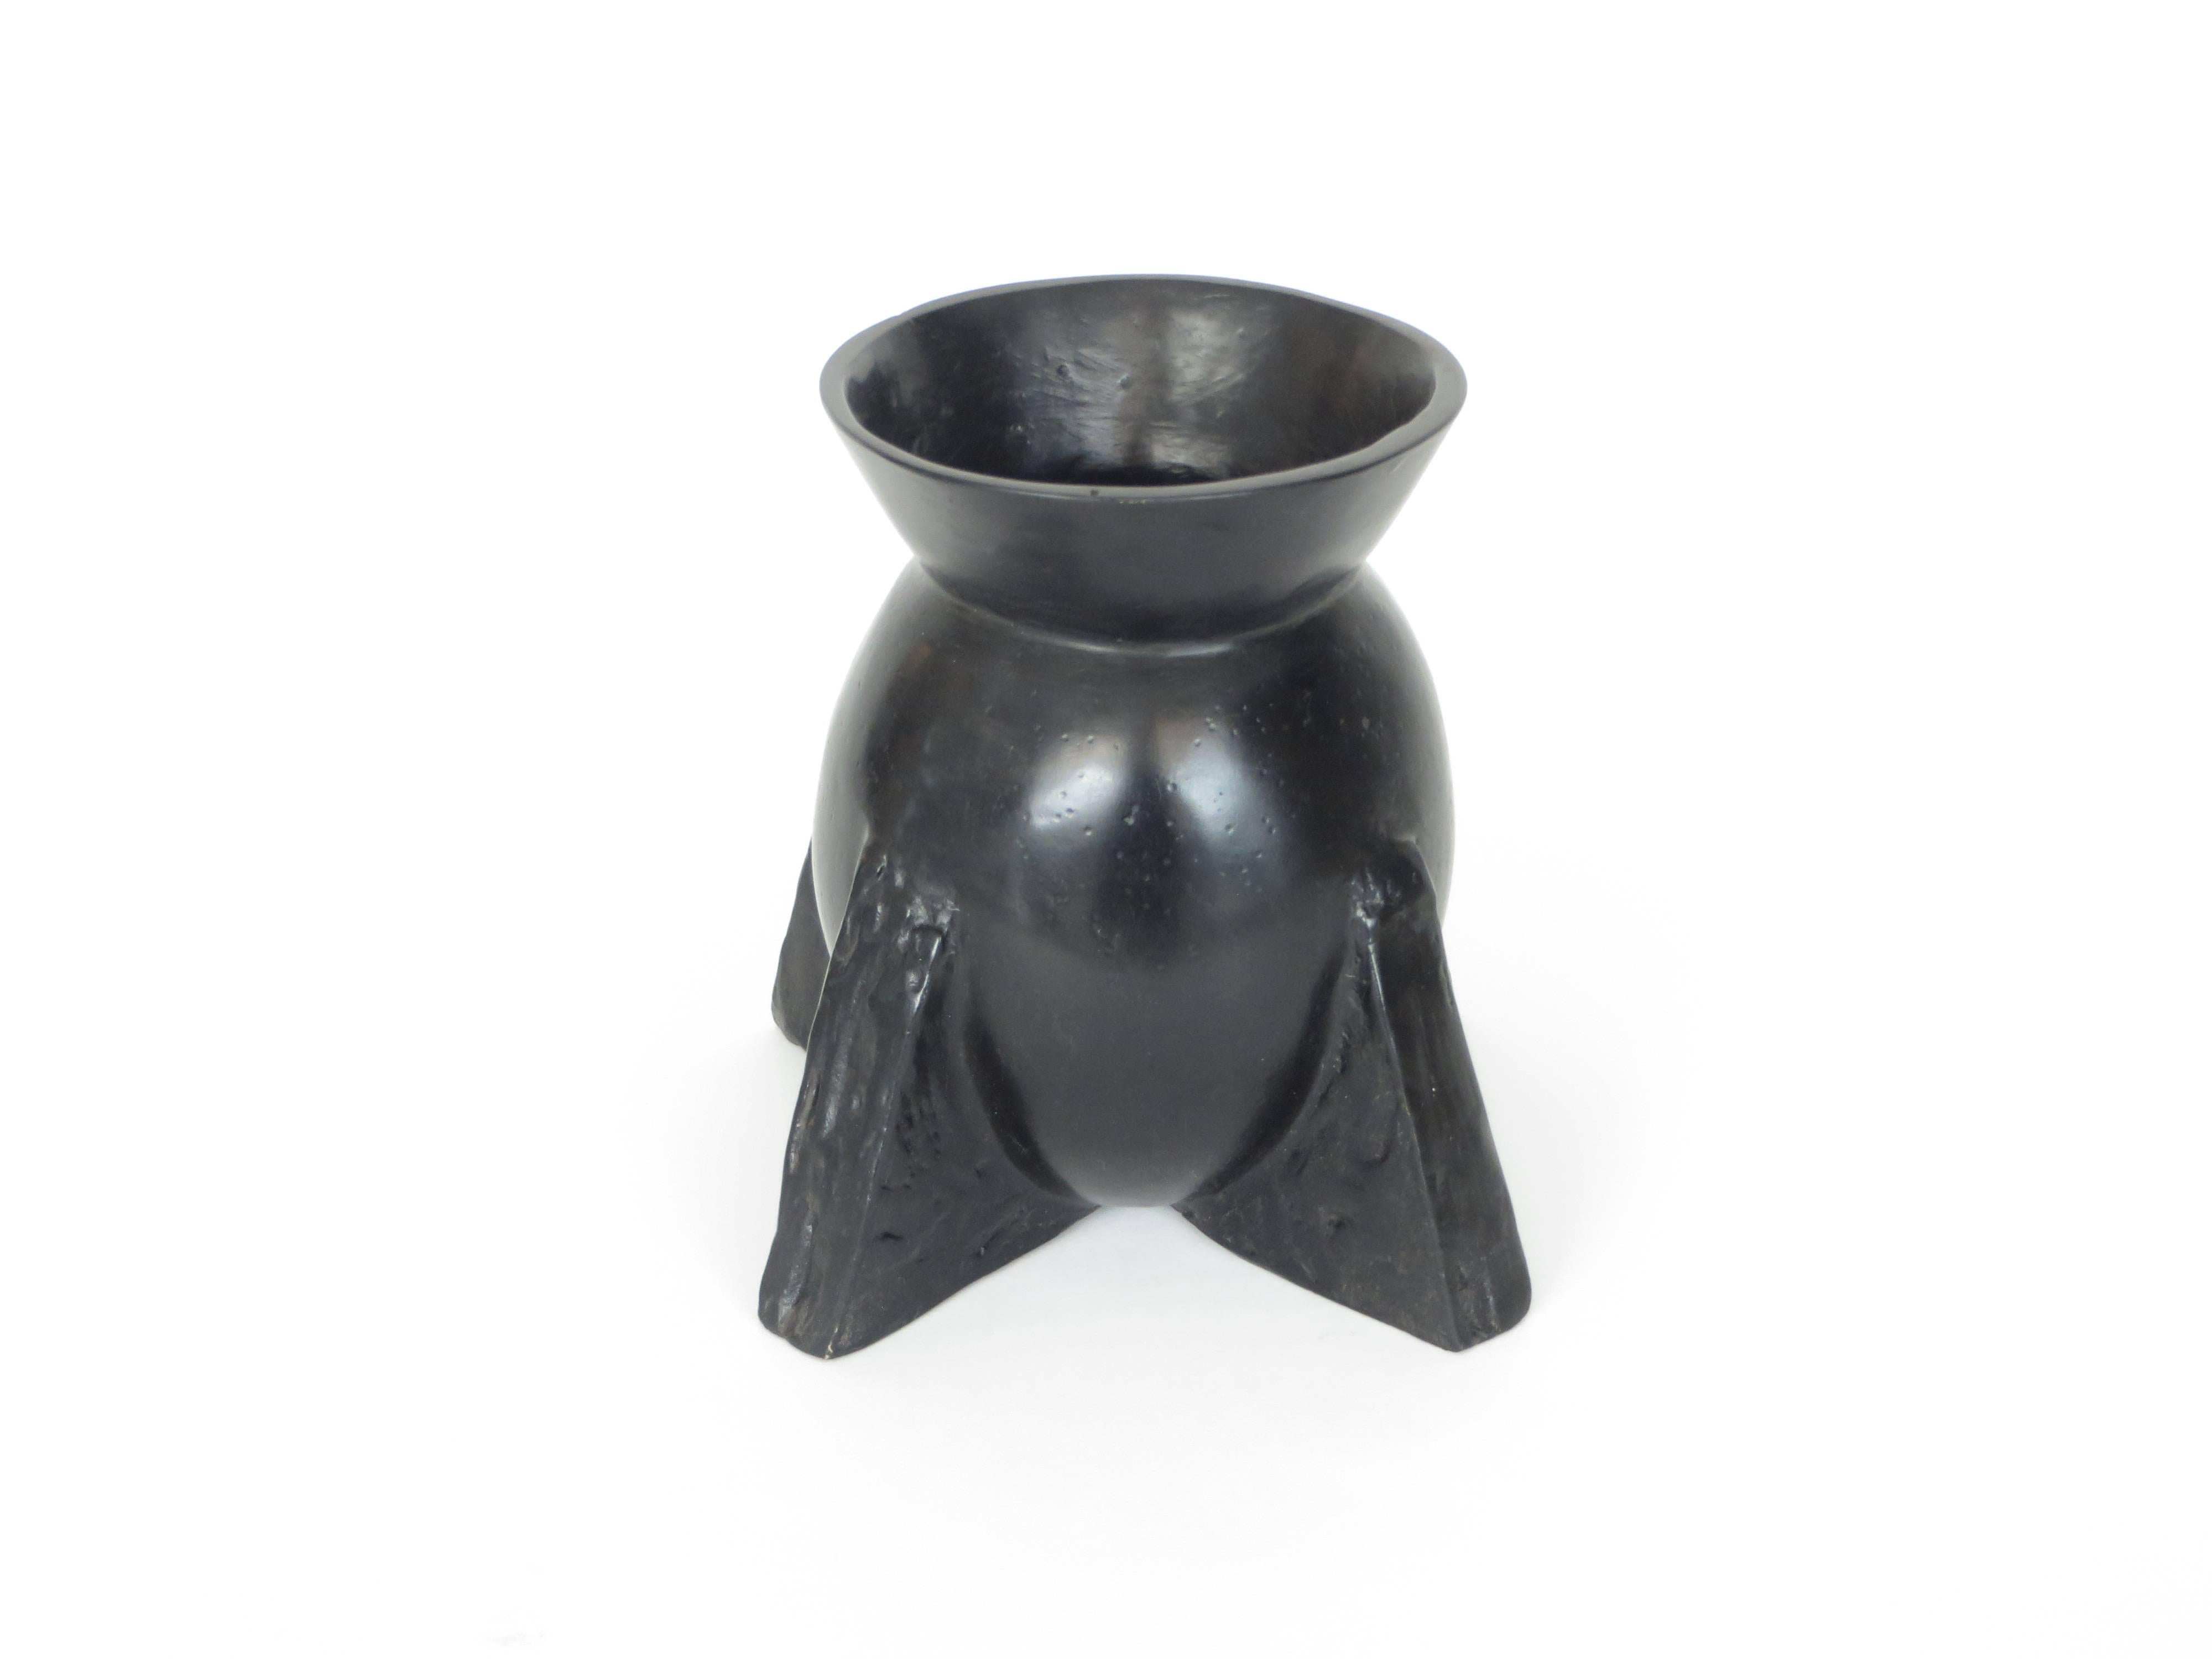 L'iconique vase Evase en bronze de la collection Rick Owens bronze relic. 
Elle est présentée dans sa patine noire.
Chaque bronze est fabriqué à la main en France et est signé. 
Peut être utilisé comme vase ou objet sculptural. Peut contenir de